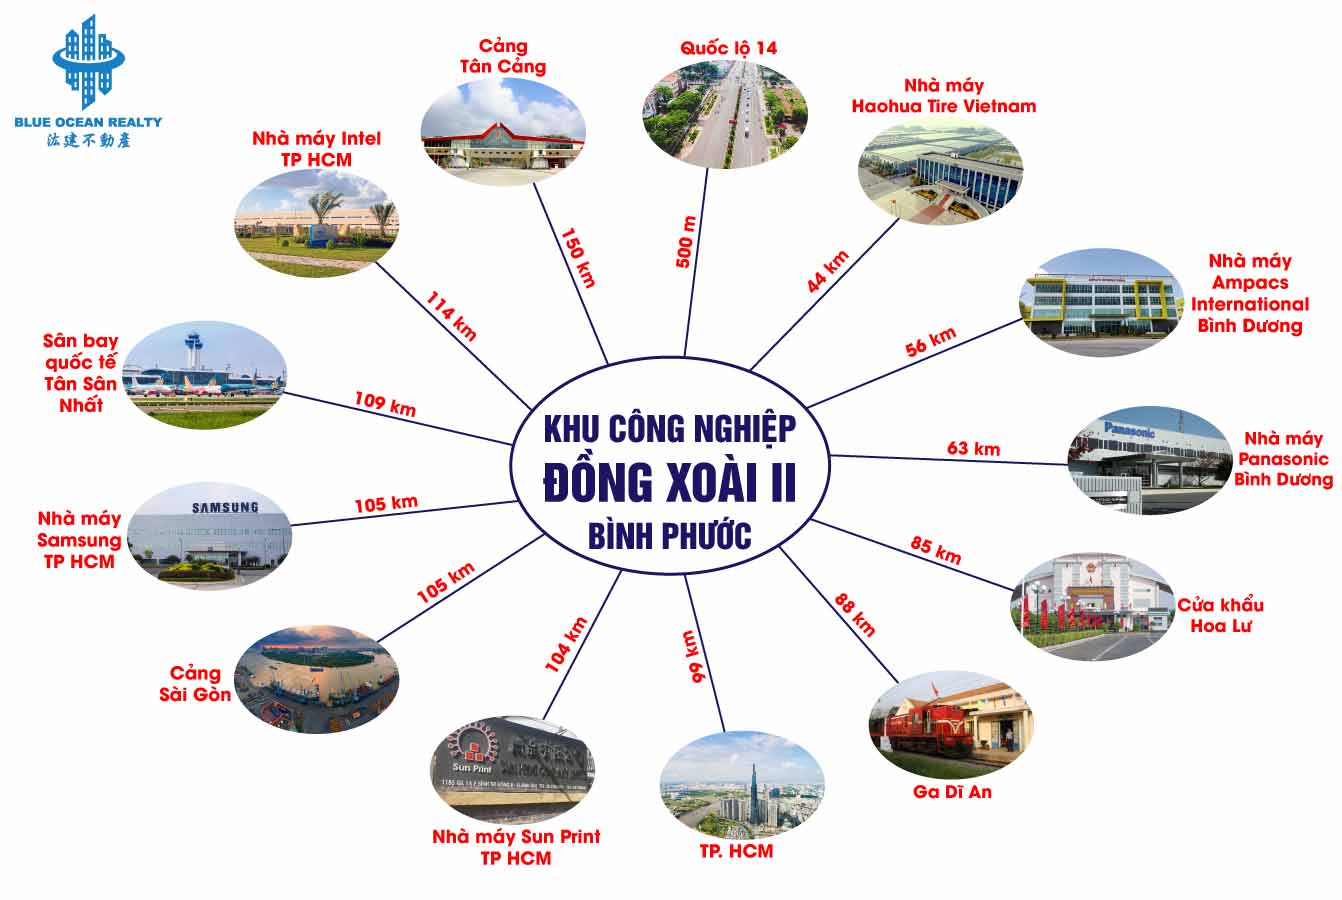 Khu công nghiệp Đồng Xoài II - TP Đồng Xoài tỉnh Bình Phước